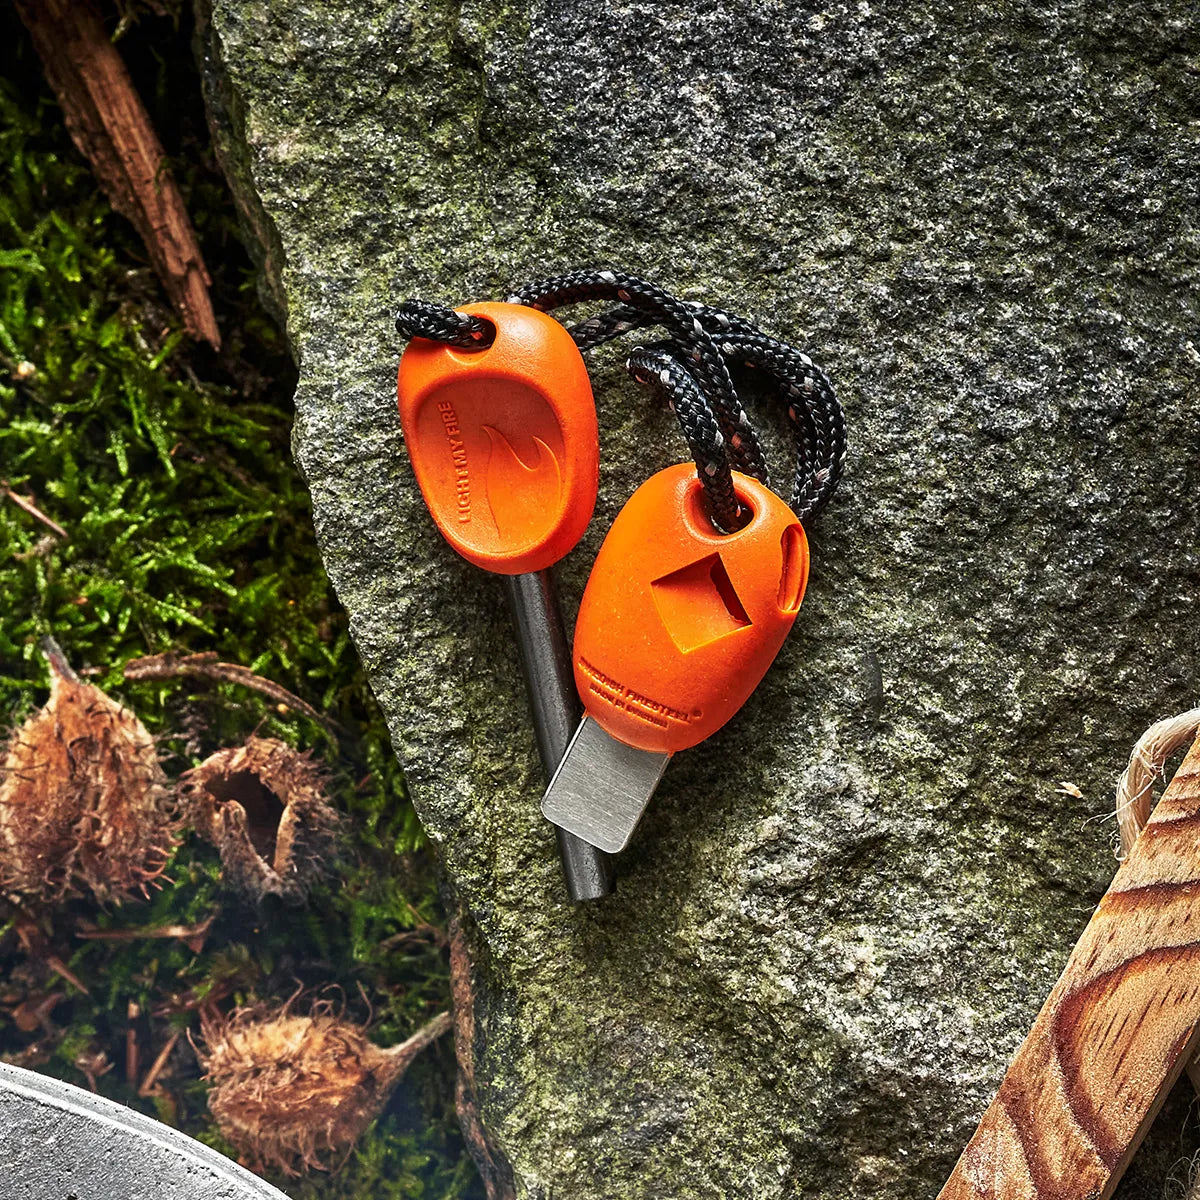 Orange ferro rod and striker outside on a rock.